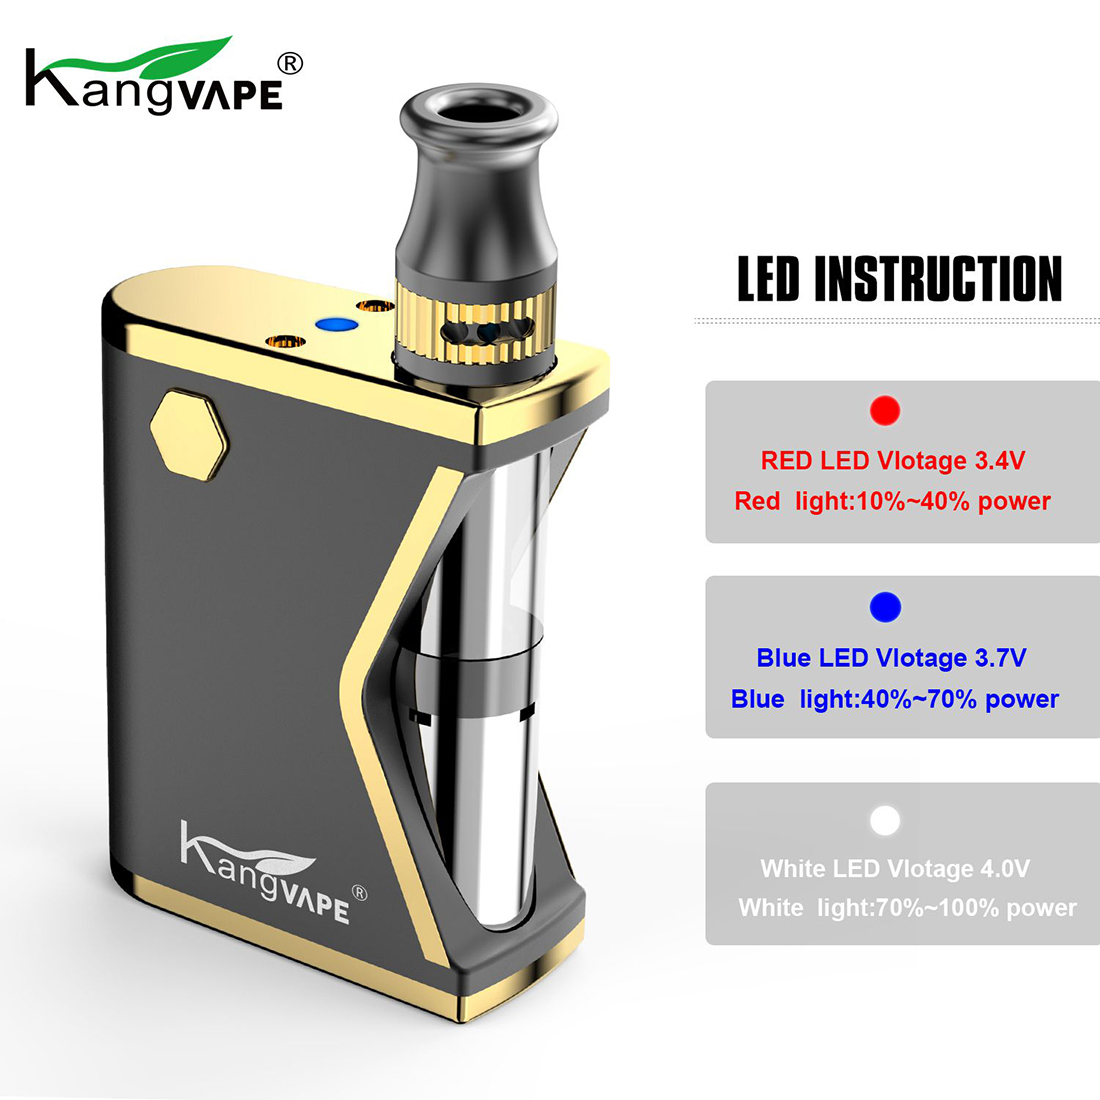 Kangvape Mini K Box Kit LED Indicator